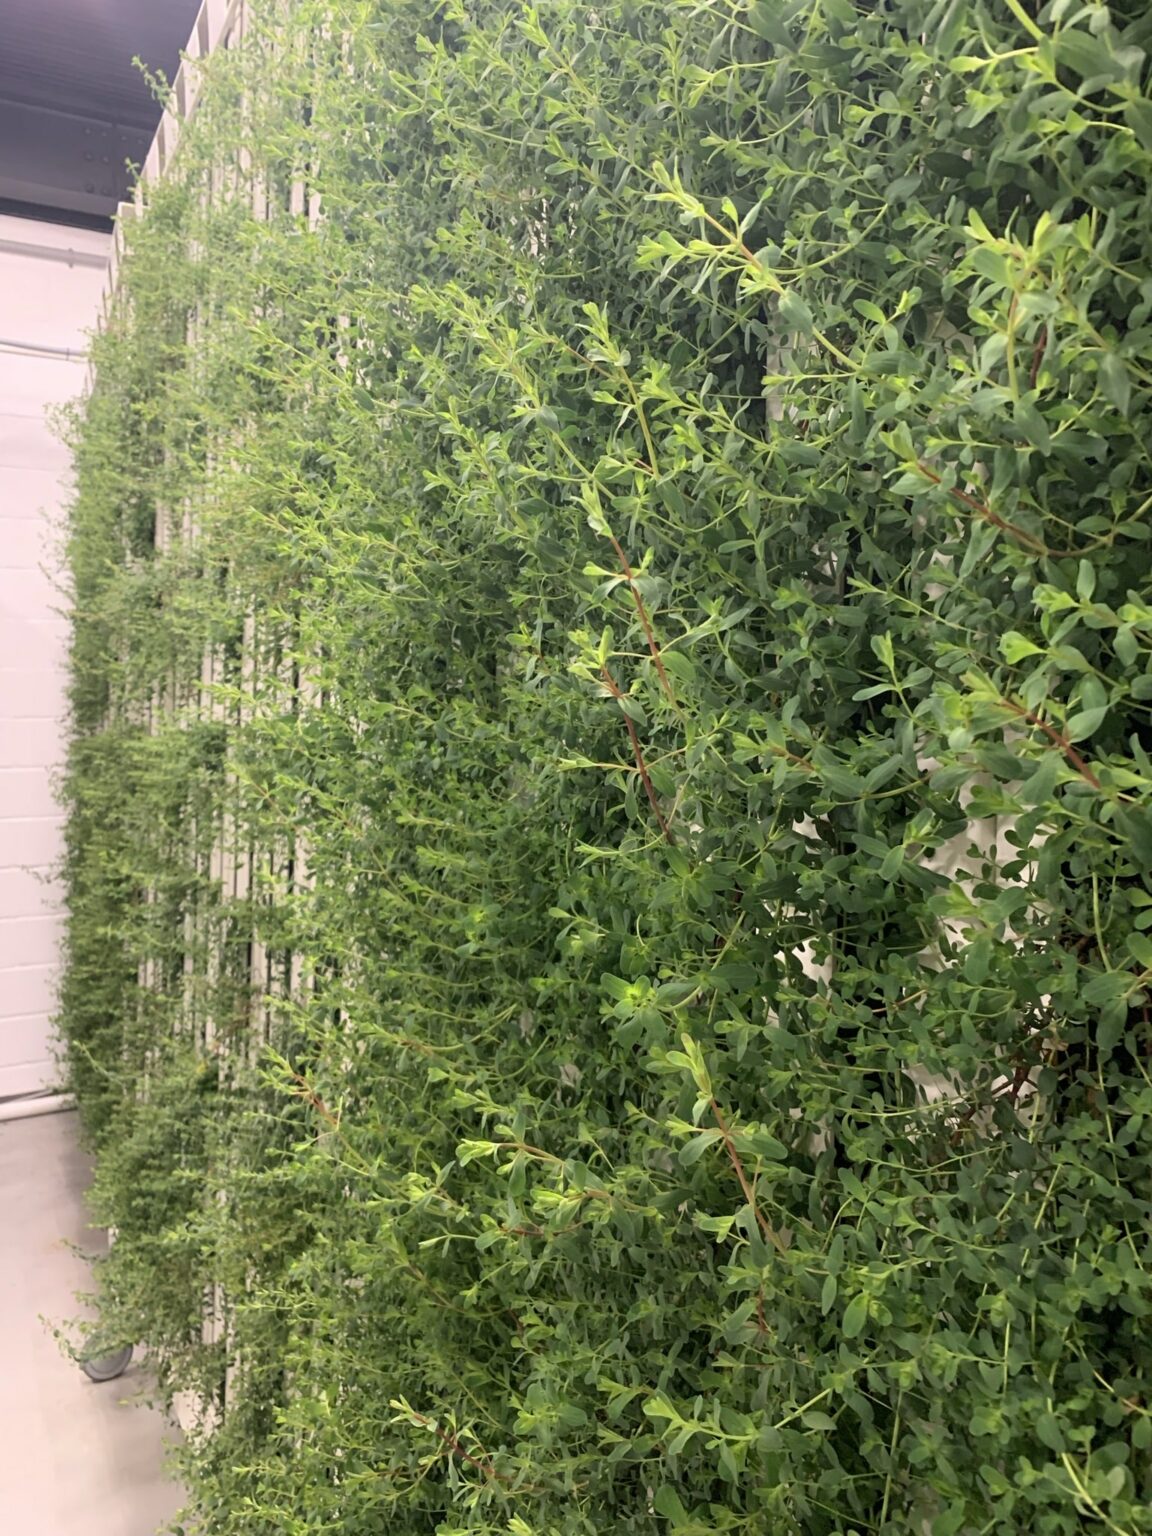 plants on racks